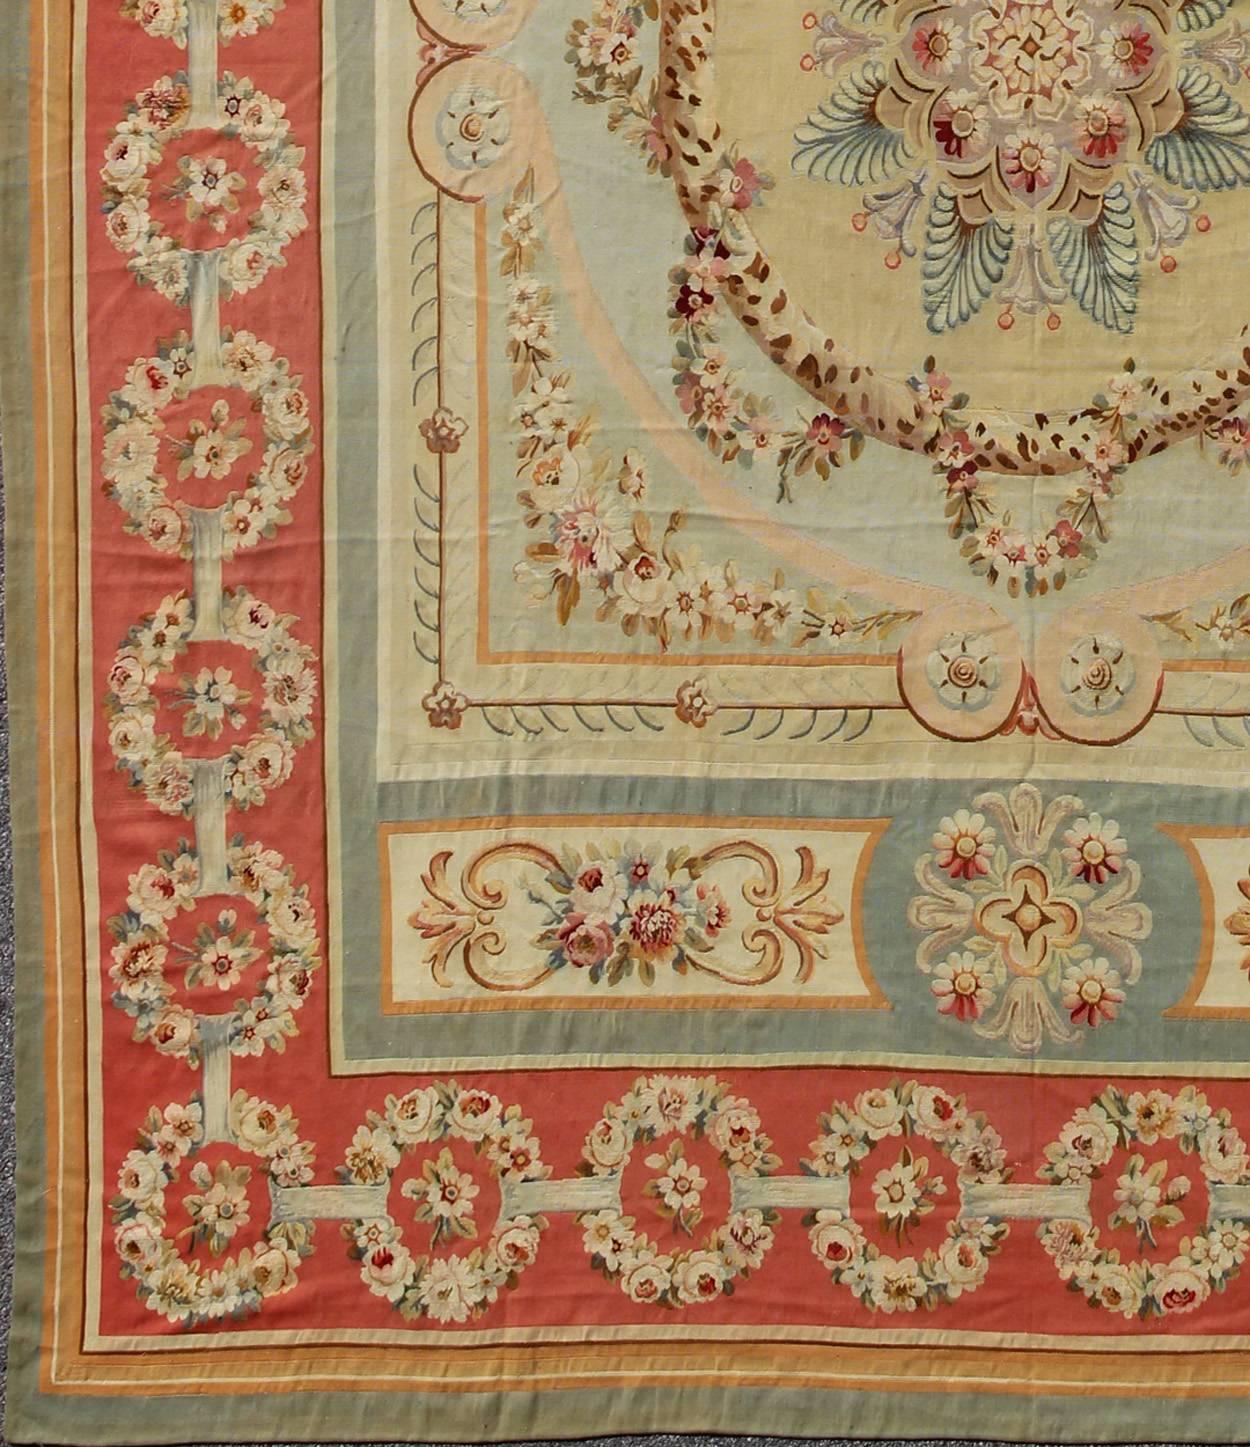 Tapis ancien à médaillon d'Aubusson avec guirlandes de roses et motifs complexes
Certaines des plus belles tapisseries et certains des plus beaux tapis d'Europe ont été tissés à Aubusson, dans le centre de la France, depuis le XVIIe siècle. Cette